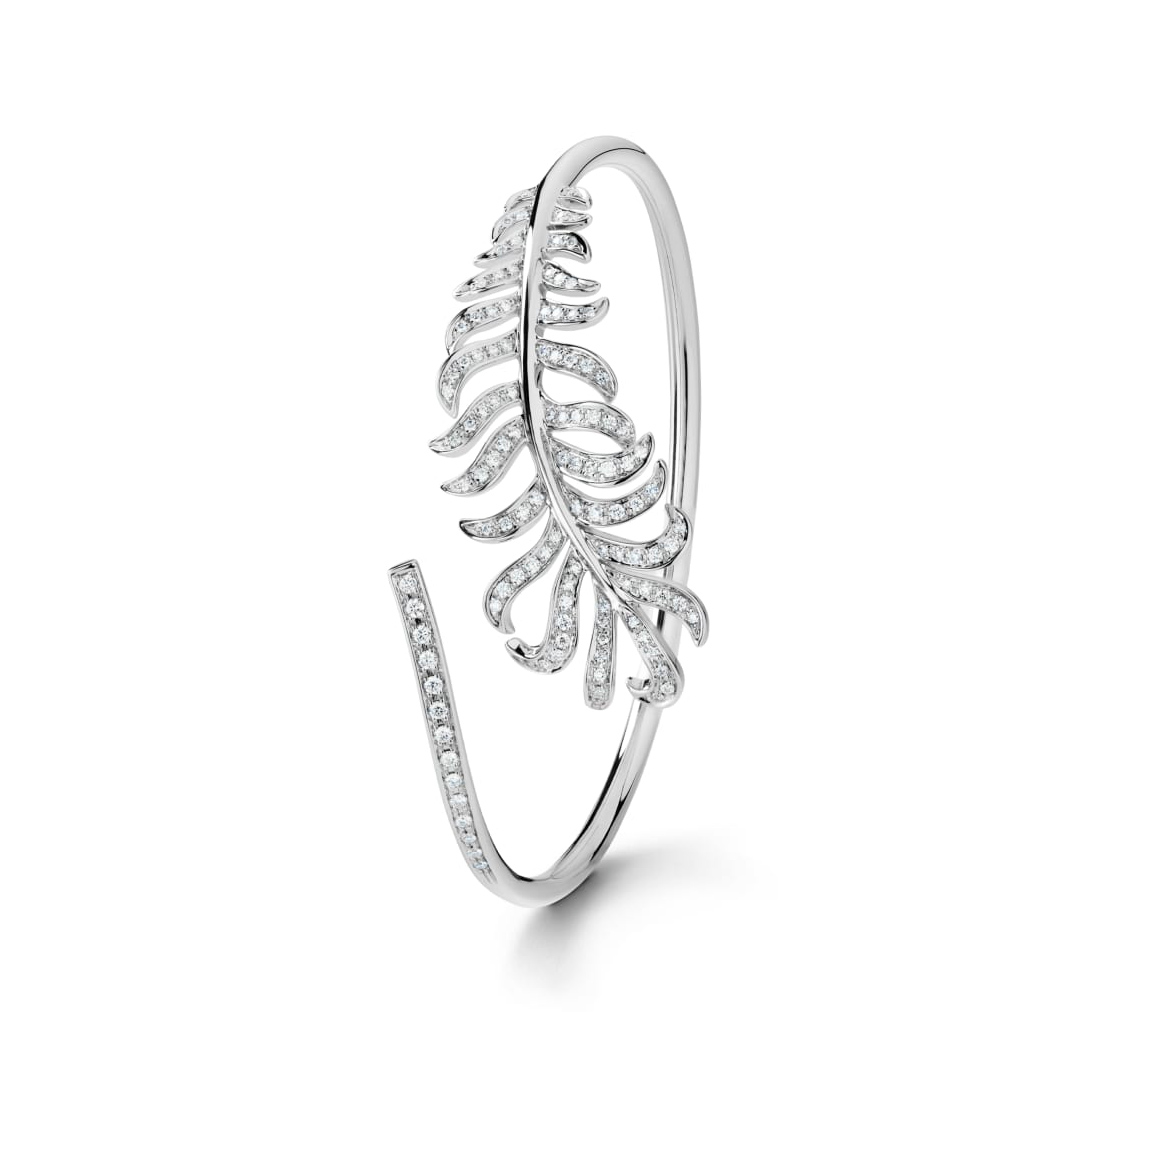 Wholesale OEM bracelet in18K white gold, diamonds OEM/ODM Jewelry design your jewelry